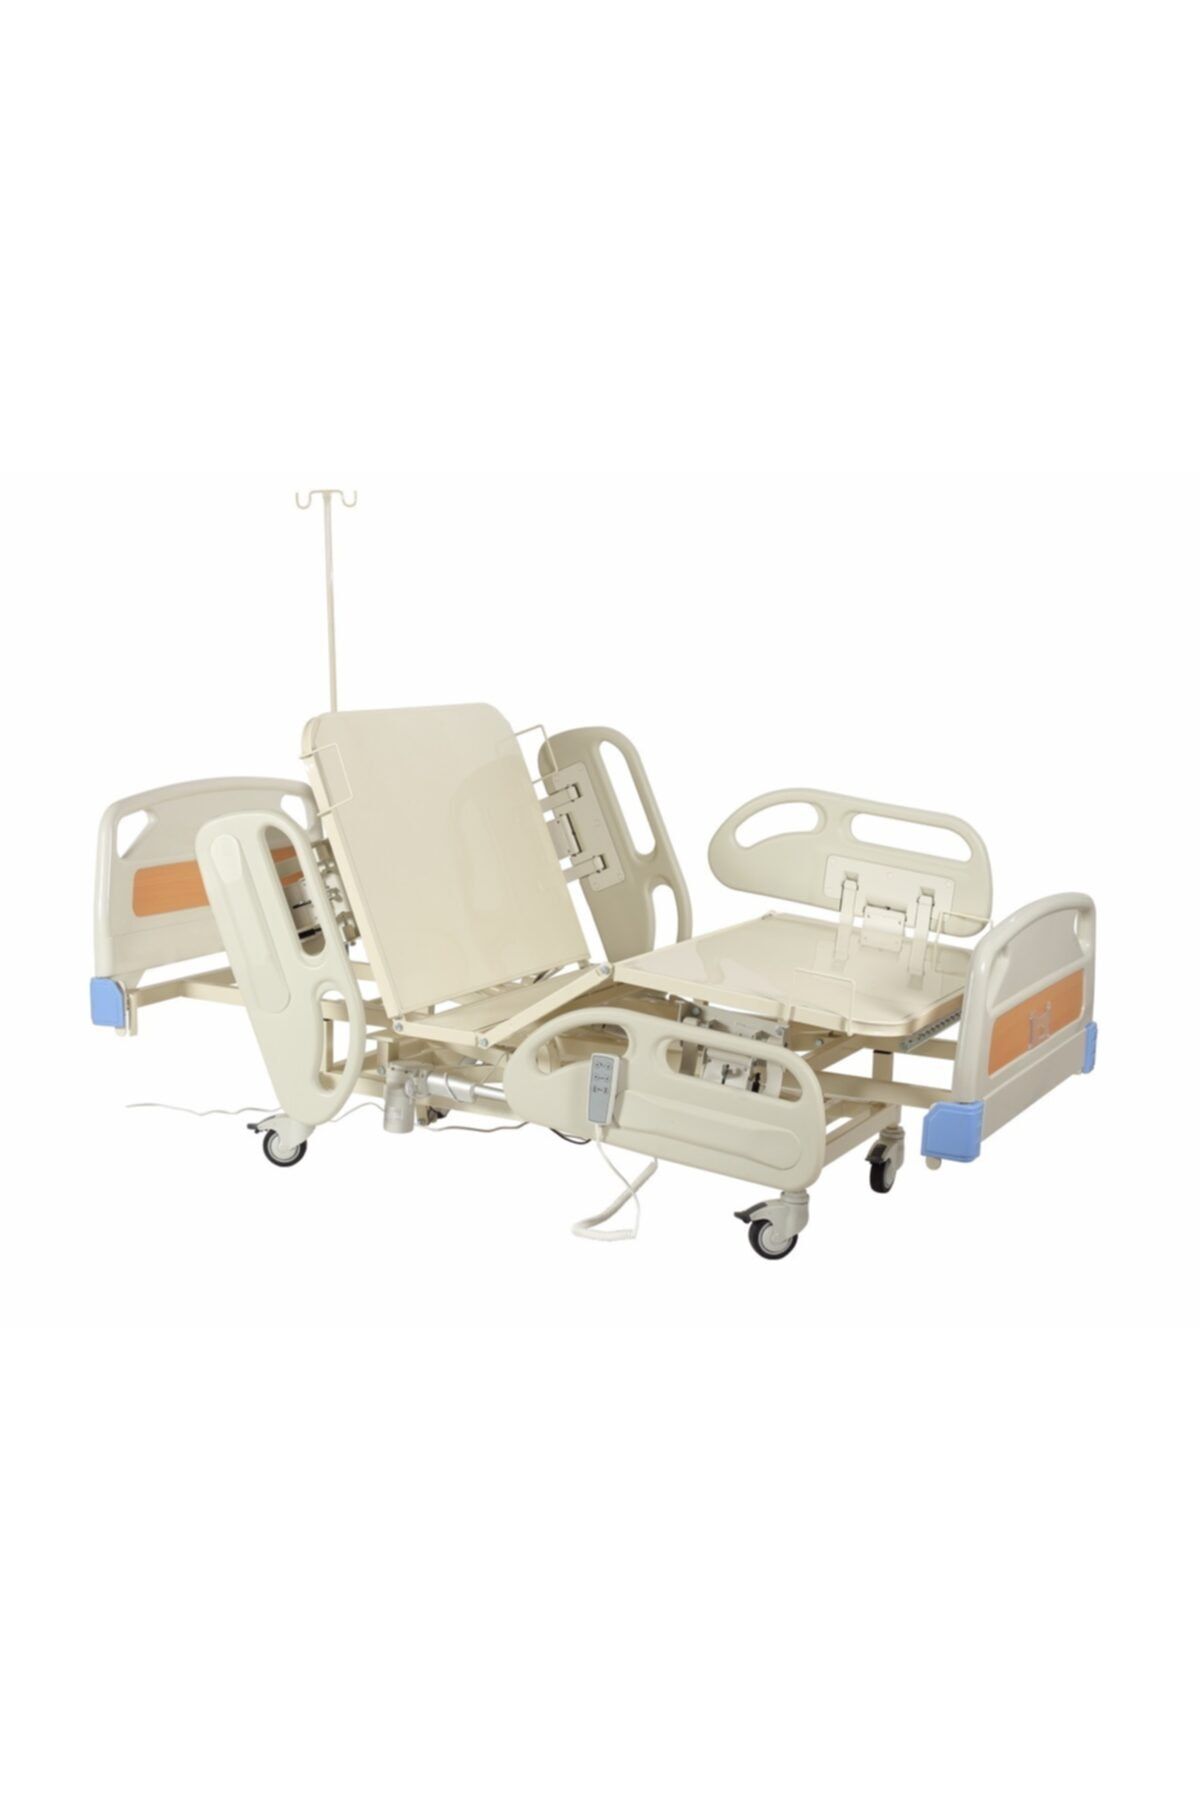 ACBED MEDİKAL 2 - Iki Motorlu (hareketli) Elektrikli Hasta Karyolası (yatağı)